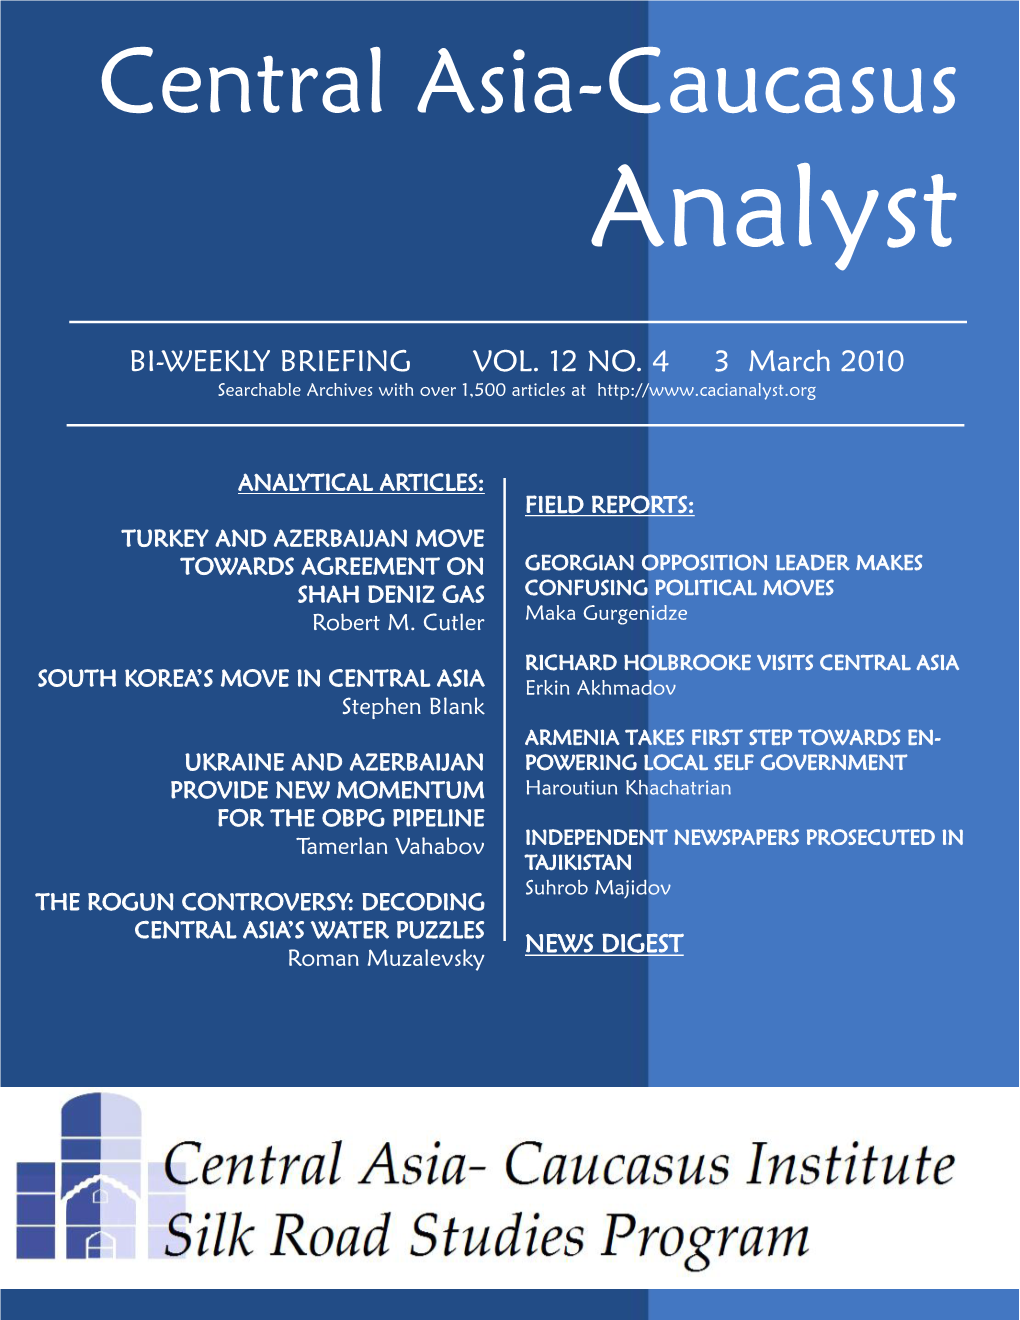 Central Asia-Caucasus Analyst Vol 12, No 4